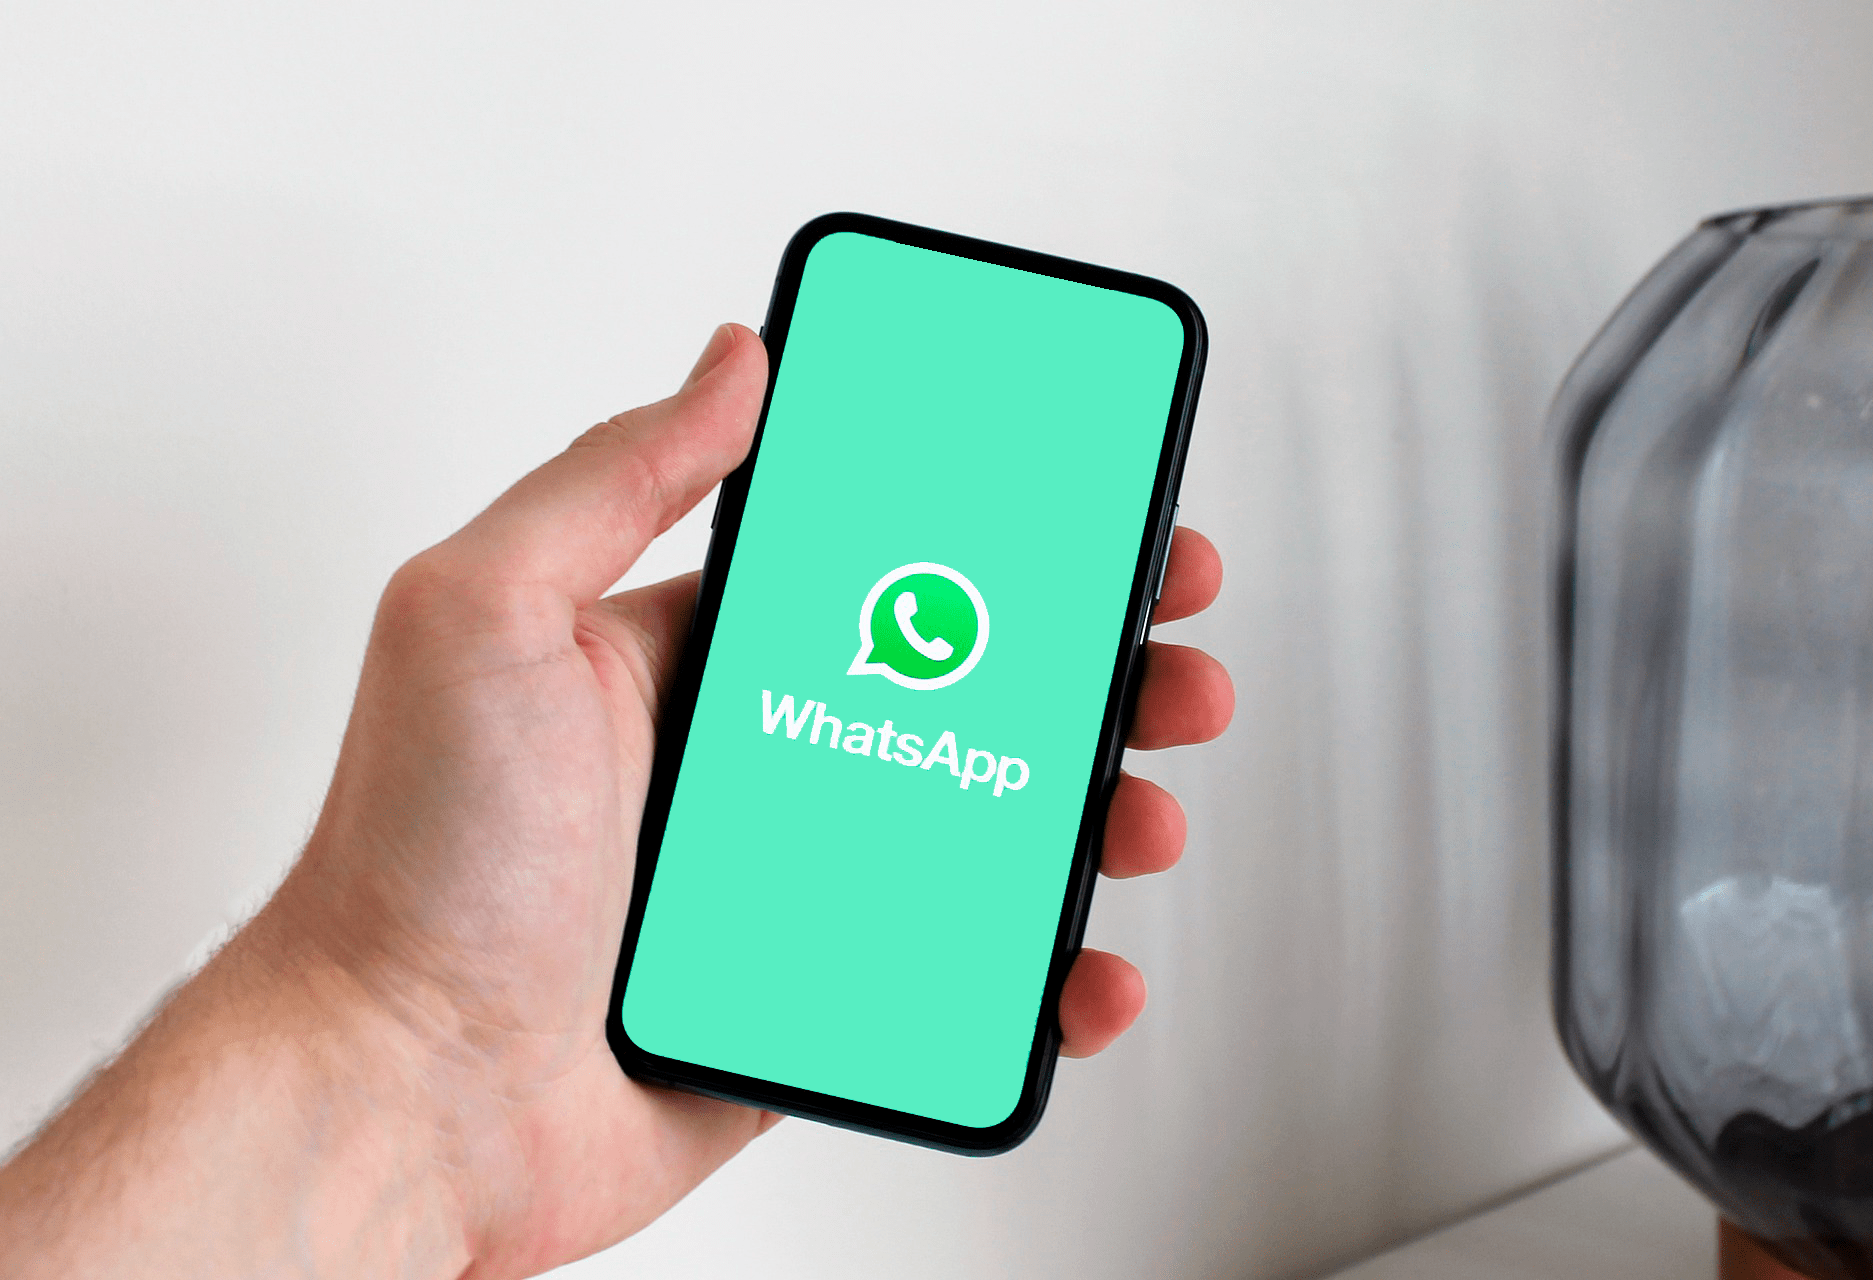 WhatsApp va a eliminar su restricción más importante, ¿es positivo?